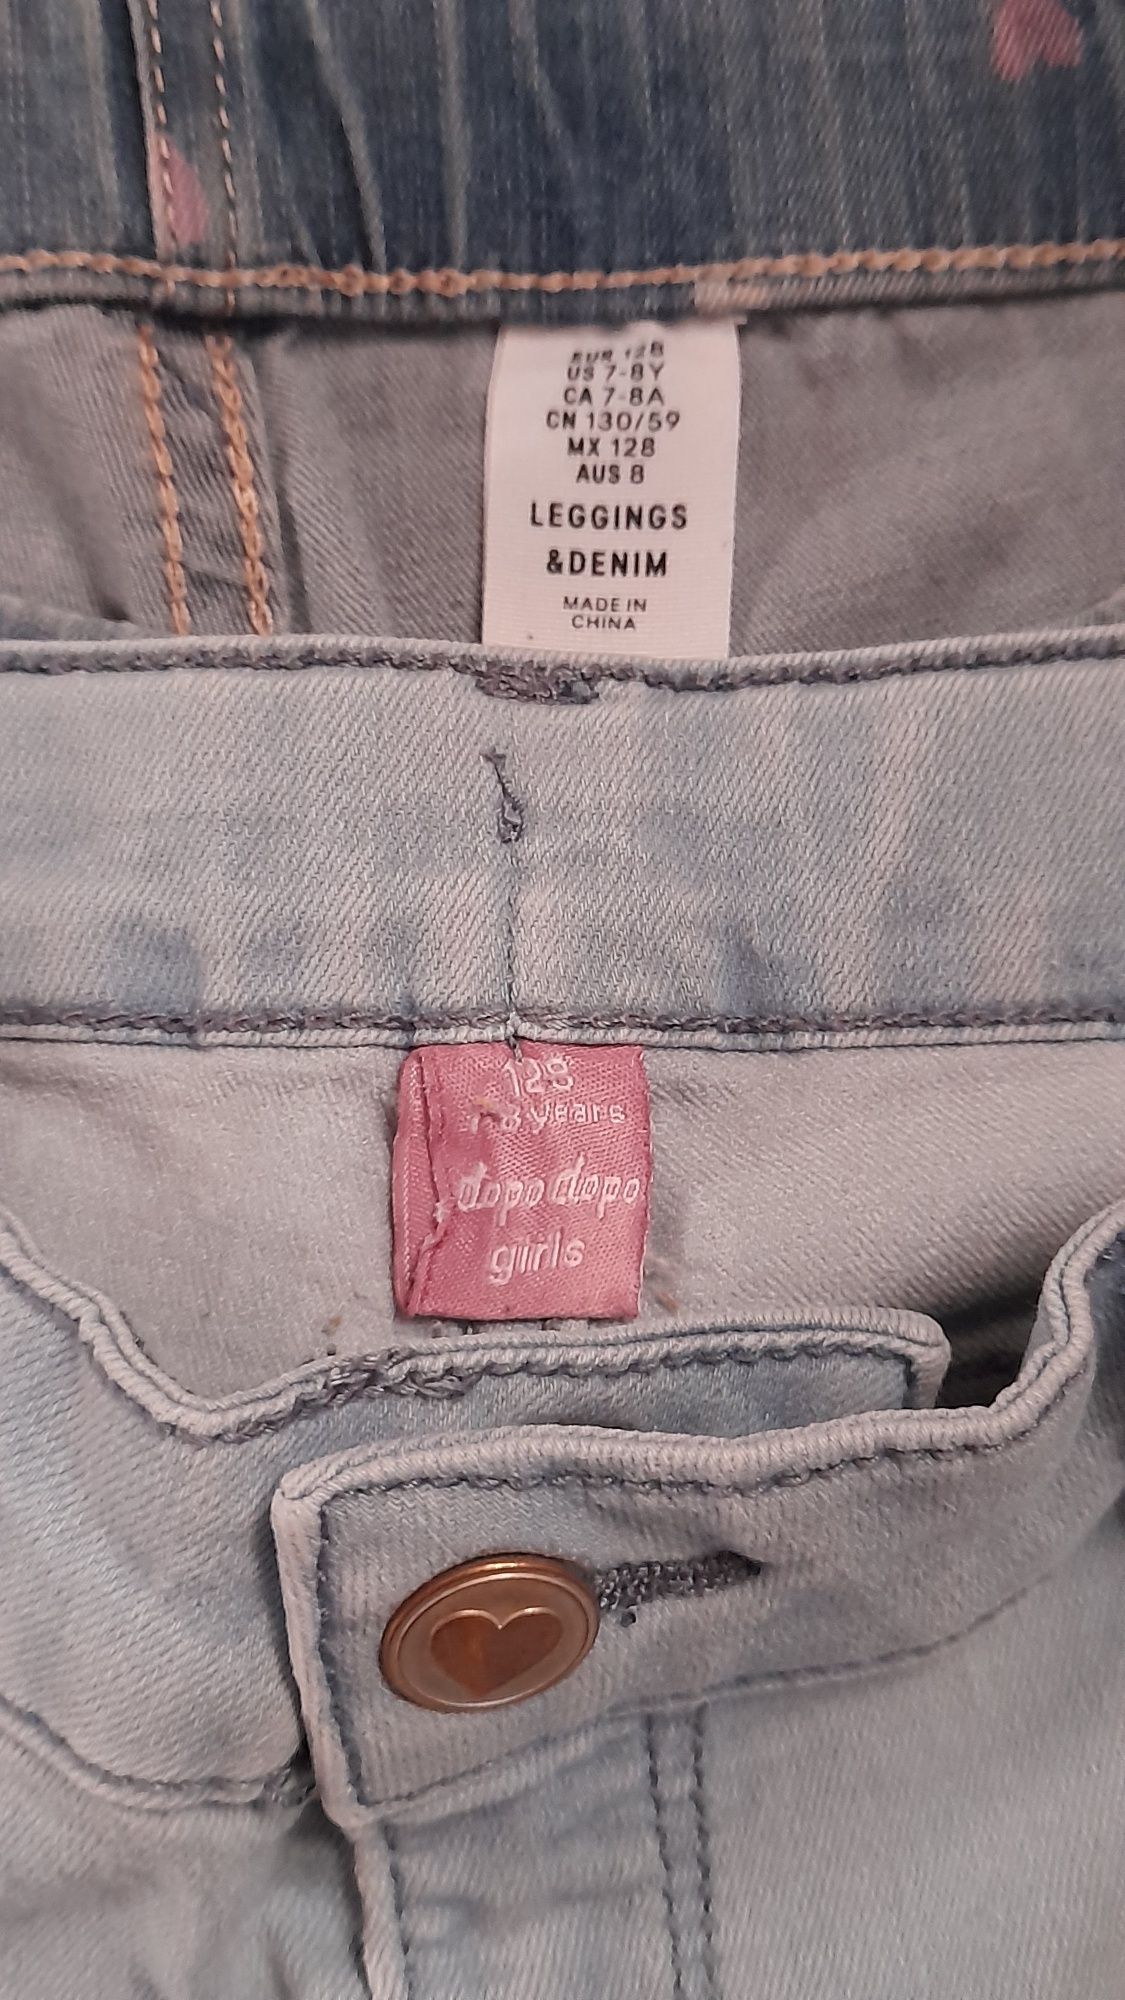 Spodnie dla dziewczynki roz. 128 firmy ,,H&M i dopo dopo girls"